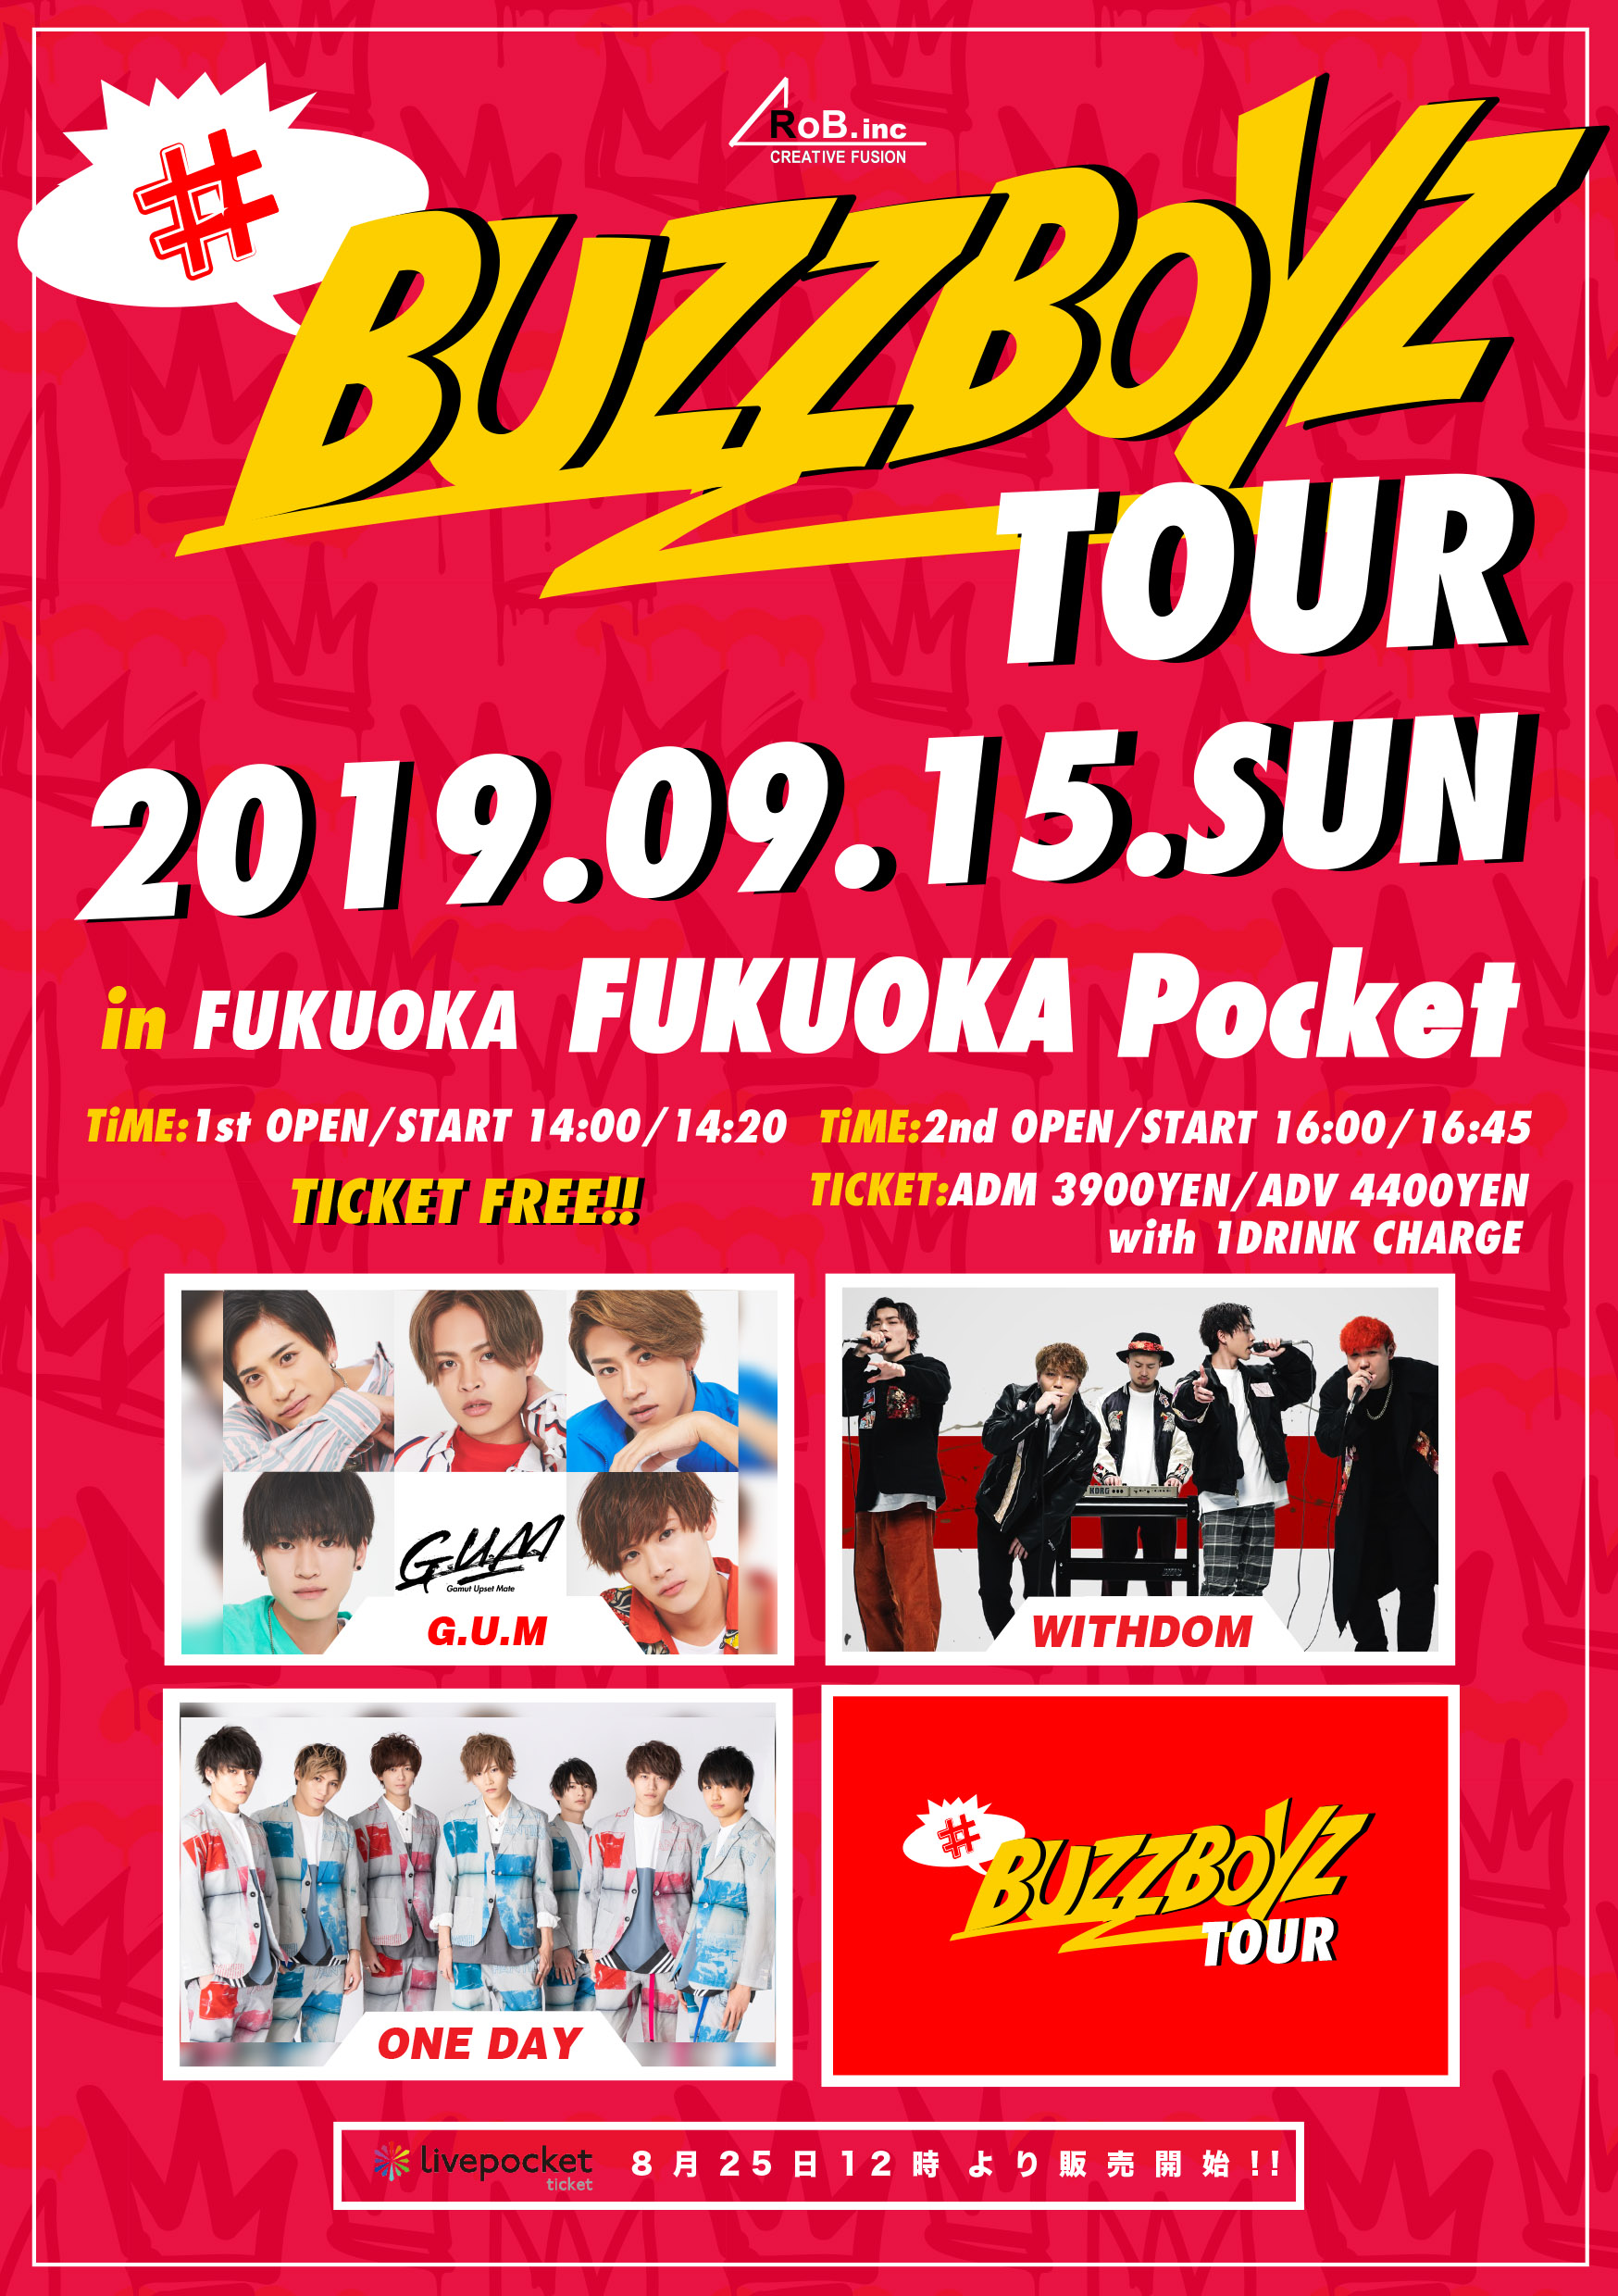 “#BUZZBOYZ TOUR”in FUKUOKA